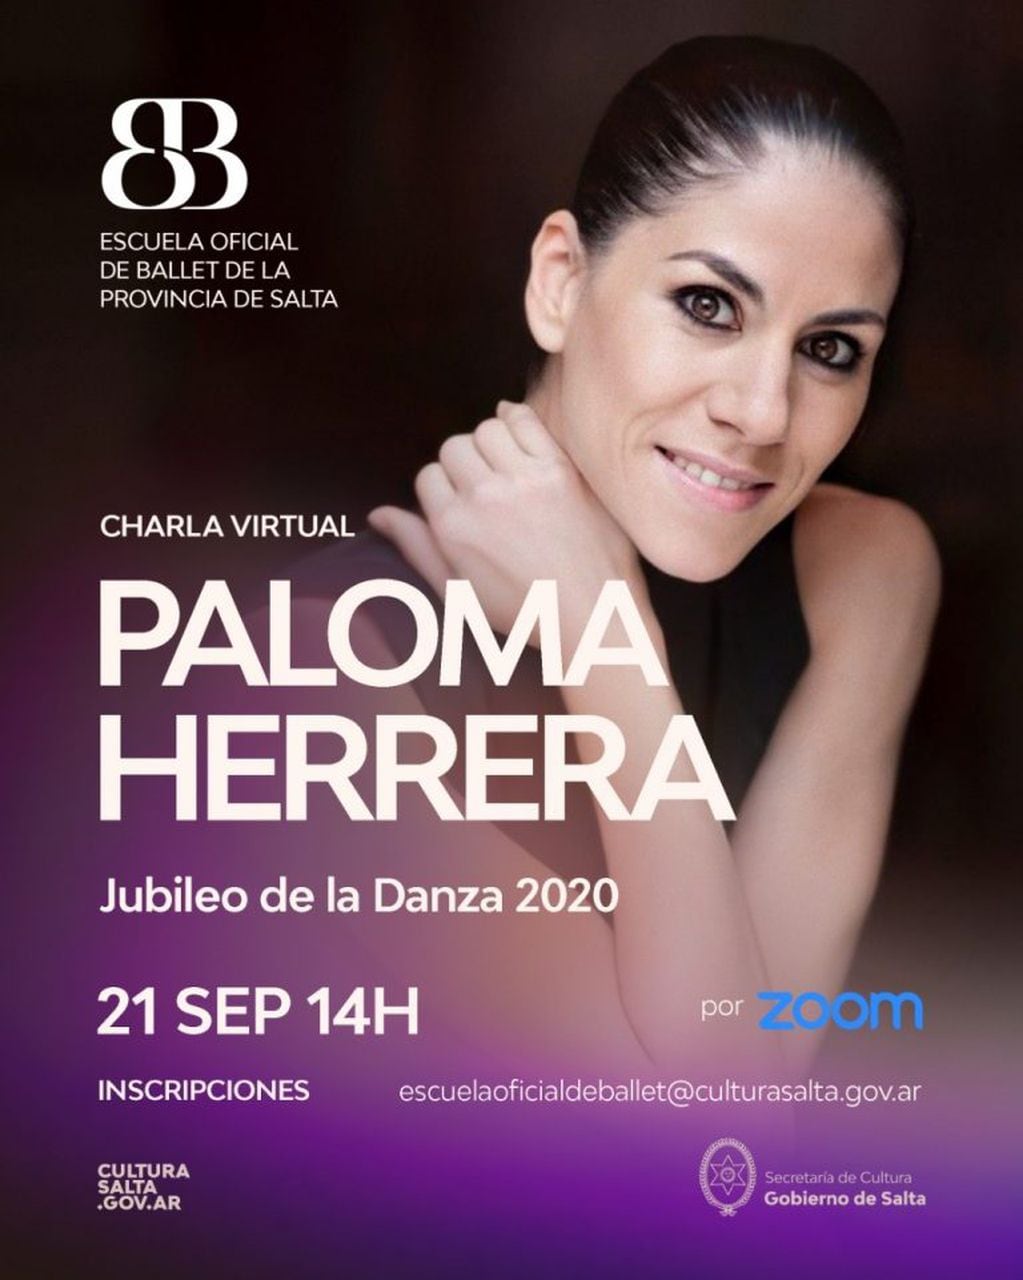 El Ballet de la Provincia presenta una charla virtual con Paloma Herrera (Cultura Salta)